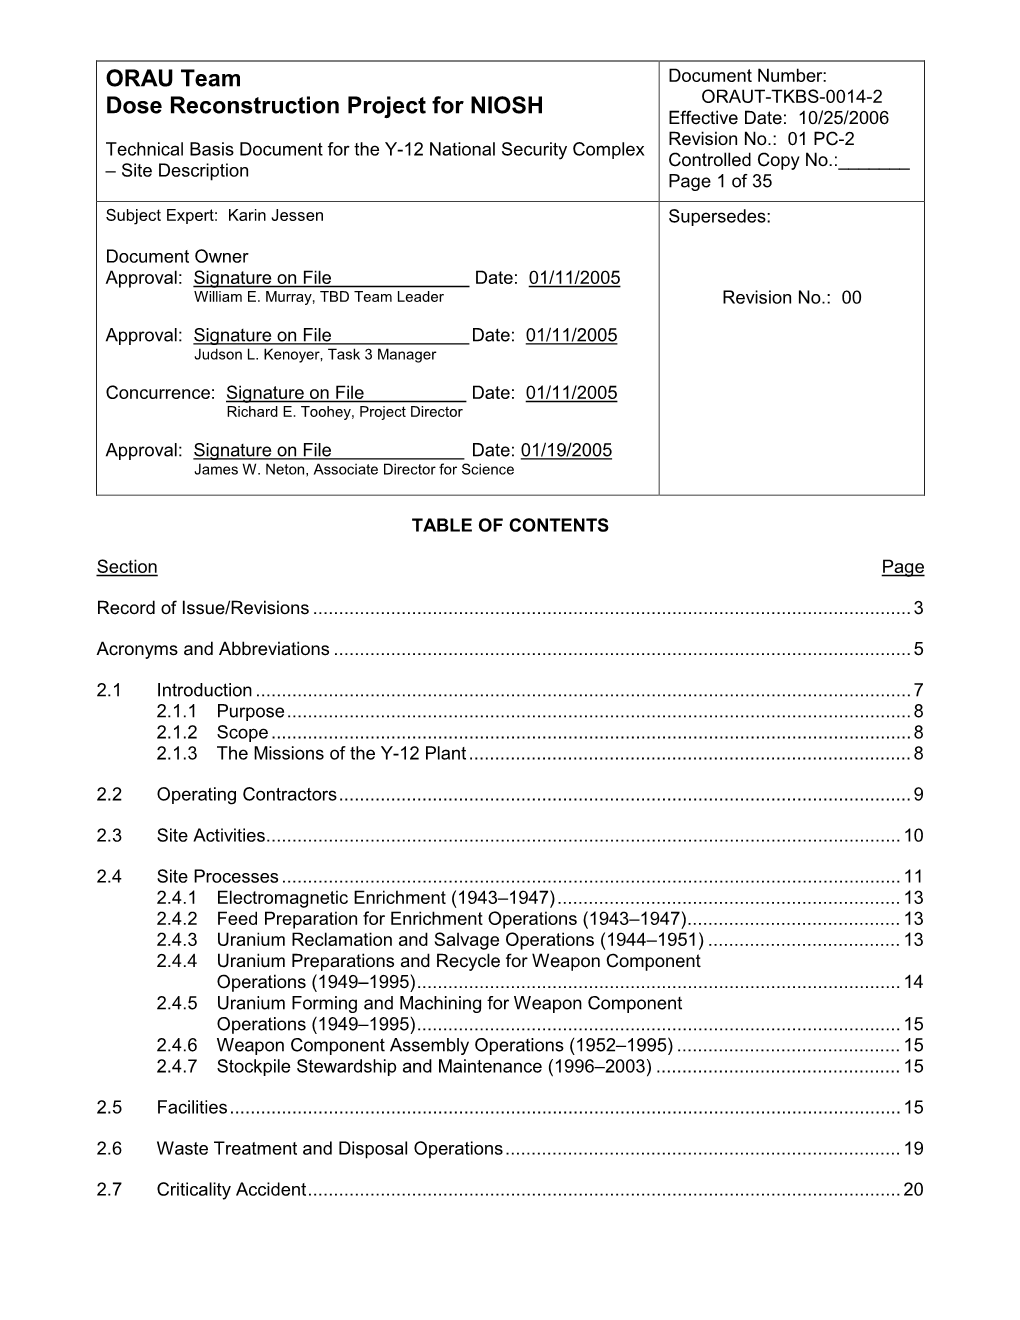 ORAU Team Document Number: ORAUT-TKBS-0014-2